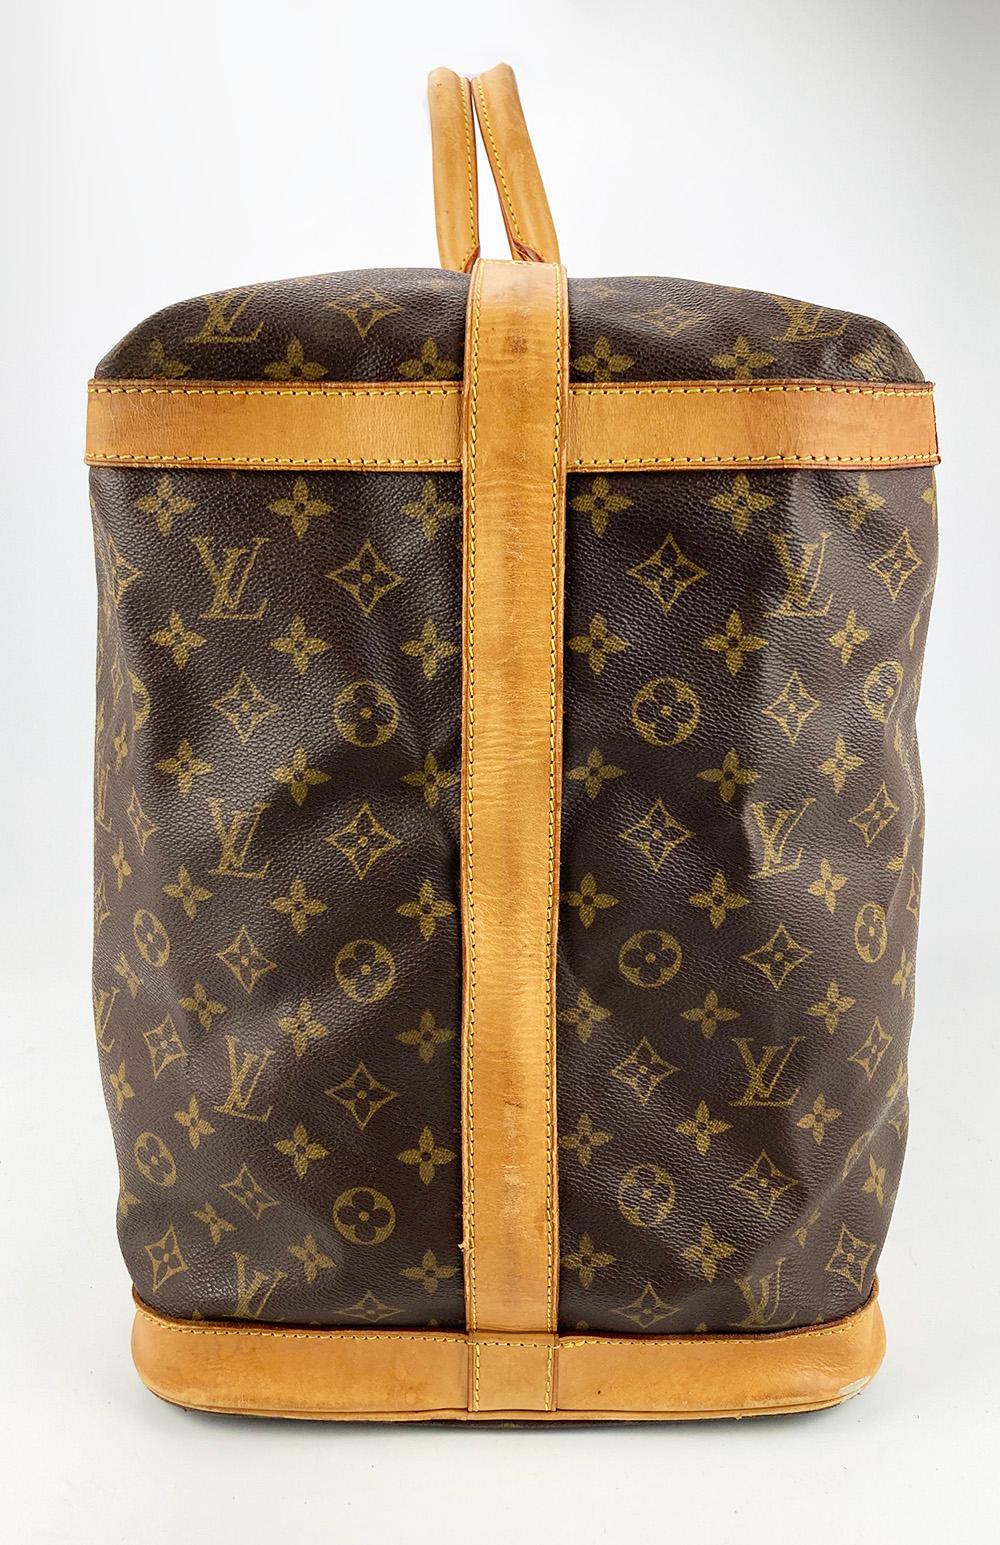 Vintage Louis Vuitton Monogram Cruiser 45 Reisetasche in gutem Zustand. Außen mit Monogrammen aus Segeltuch, verziert mit hellbraunem Leder und goldenen Messingbeschlägen. Dies ist ein seltenes Vintage-Design von Louis Vuitton. Es wird nicht mehr